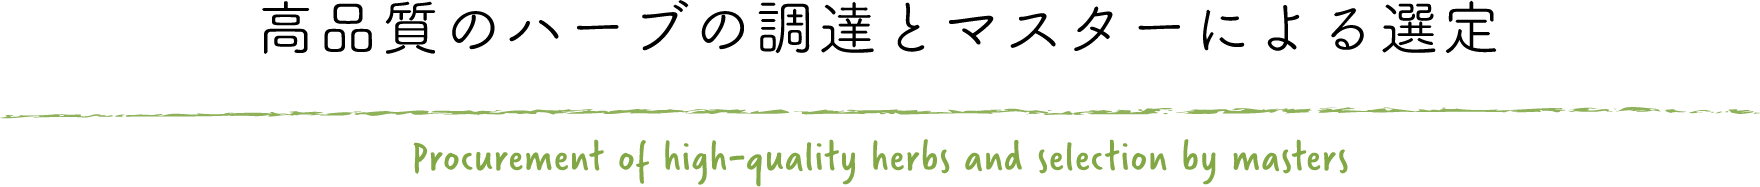 高品質のハーブの調達とマスターによる選定 Procurement of high-quality herbs and selection by masters